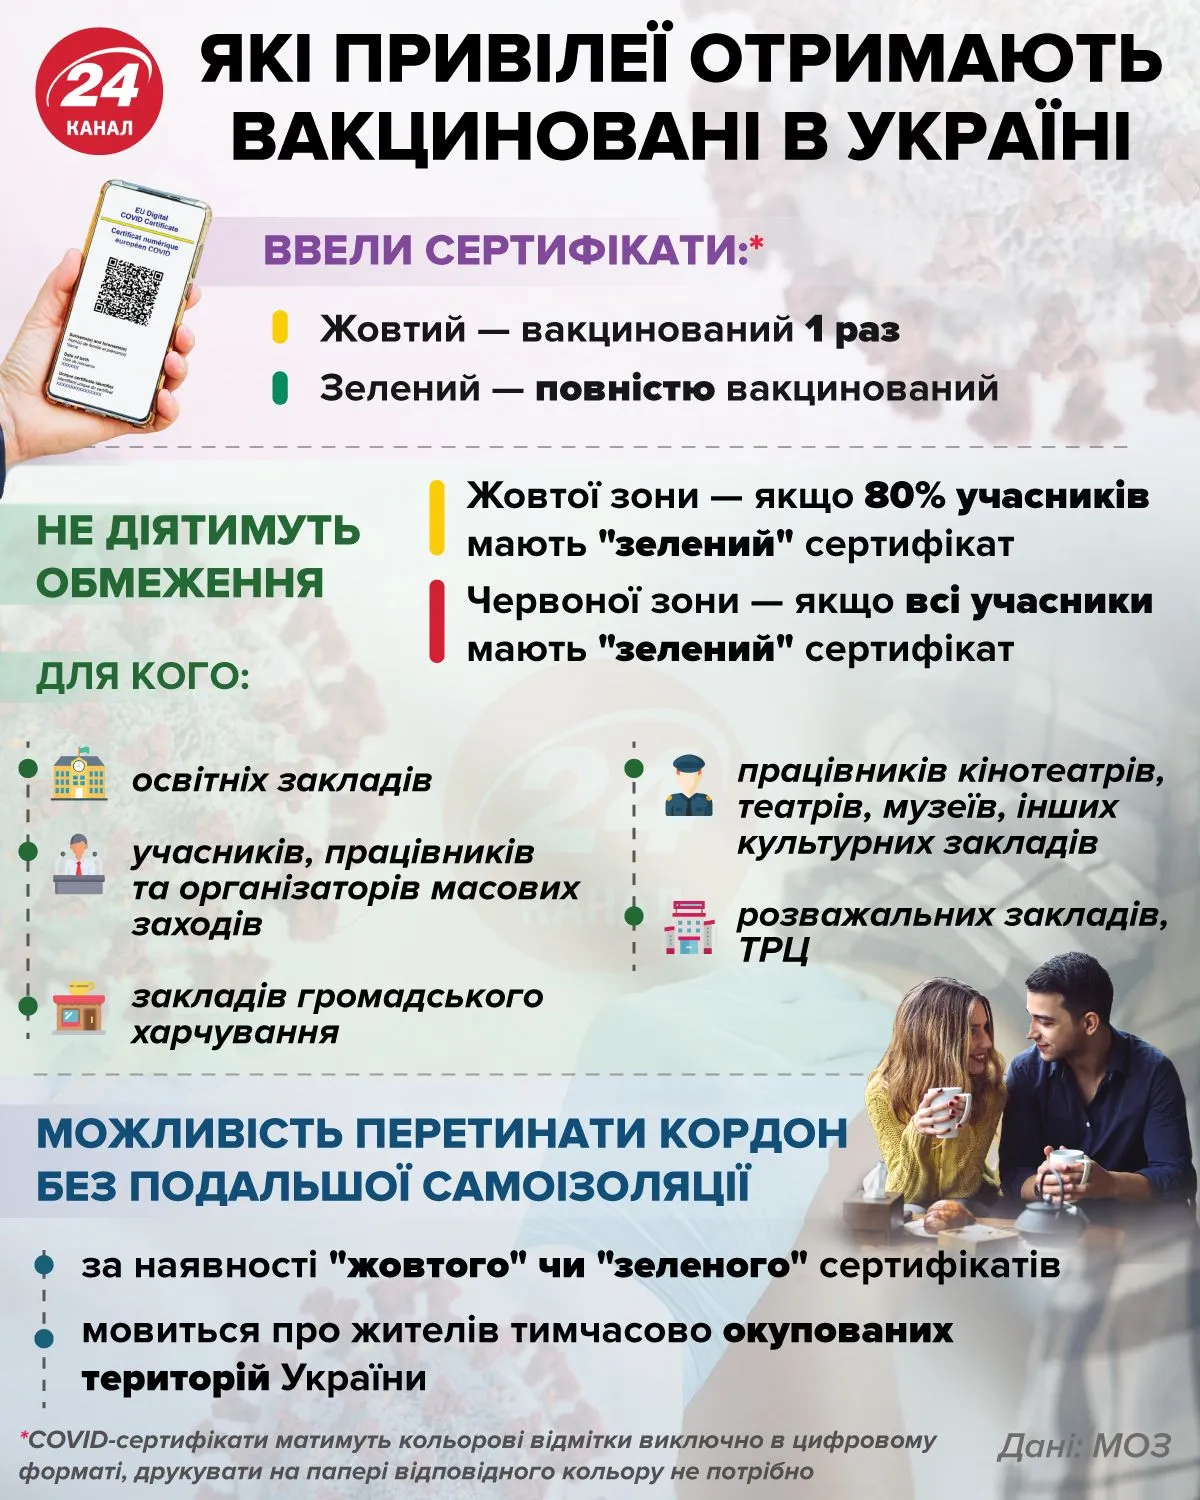 Какие привилегии получат вакцинированые украинцы / Инфографика 24 канала